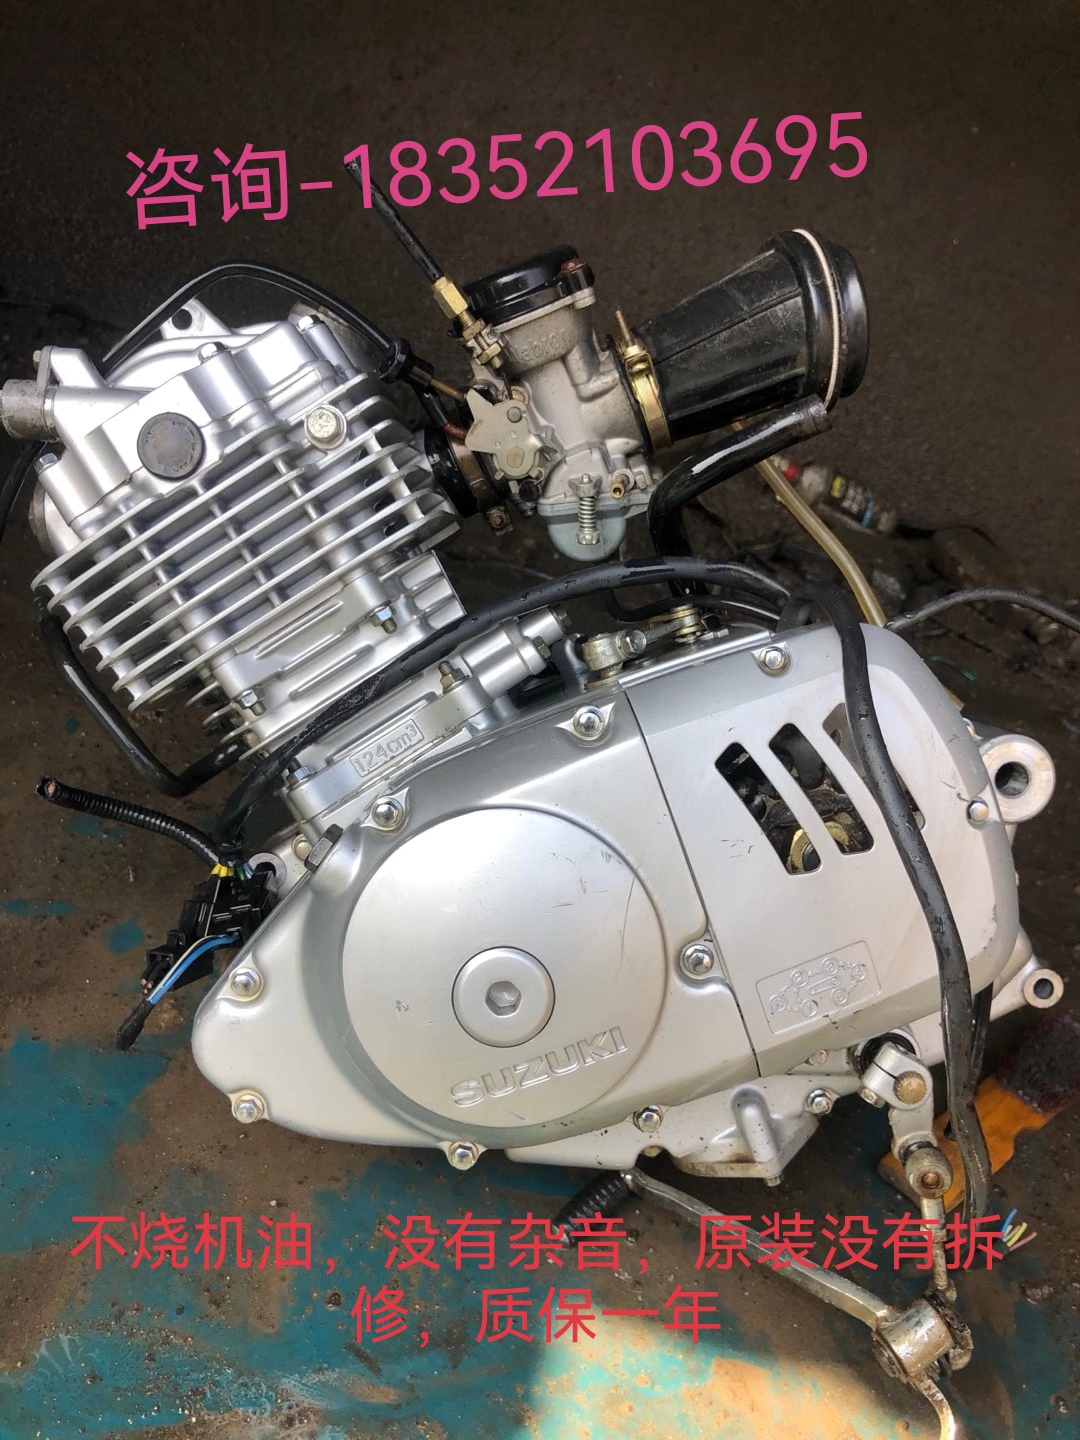 オリジナル分解部品オートバイエンジンアセンブリスズキキング 125c ダイヤモンドヒョウ Qingqi 150 ユニバーサル GN GS